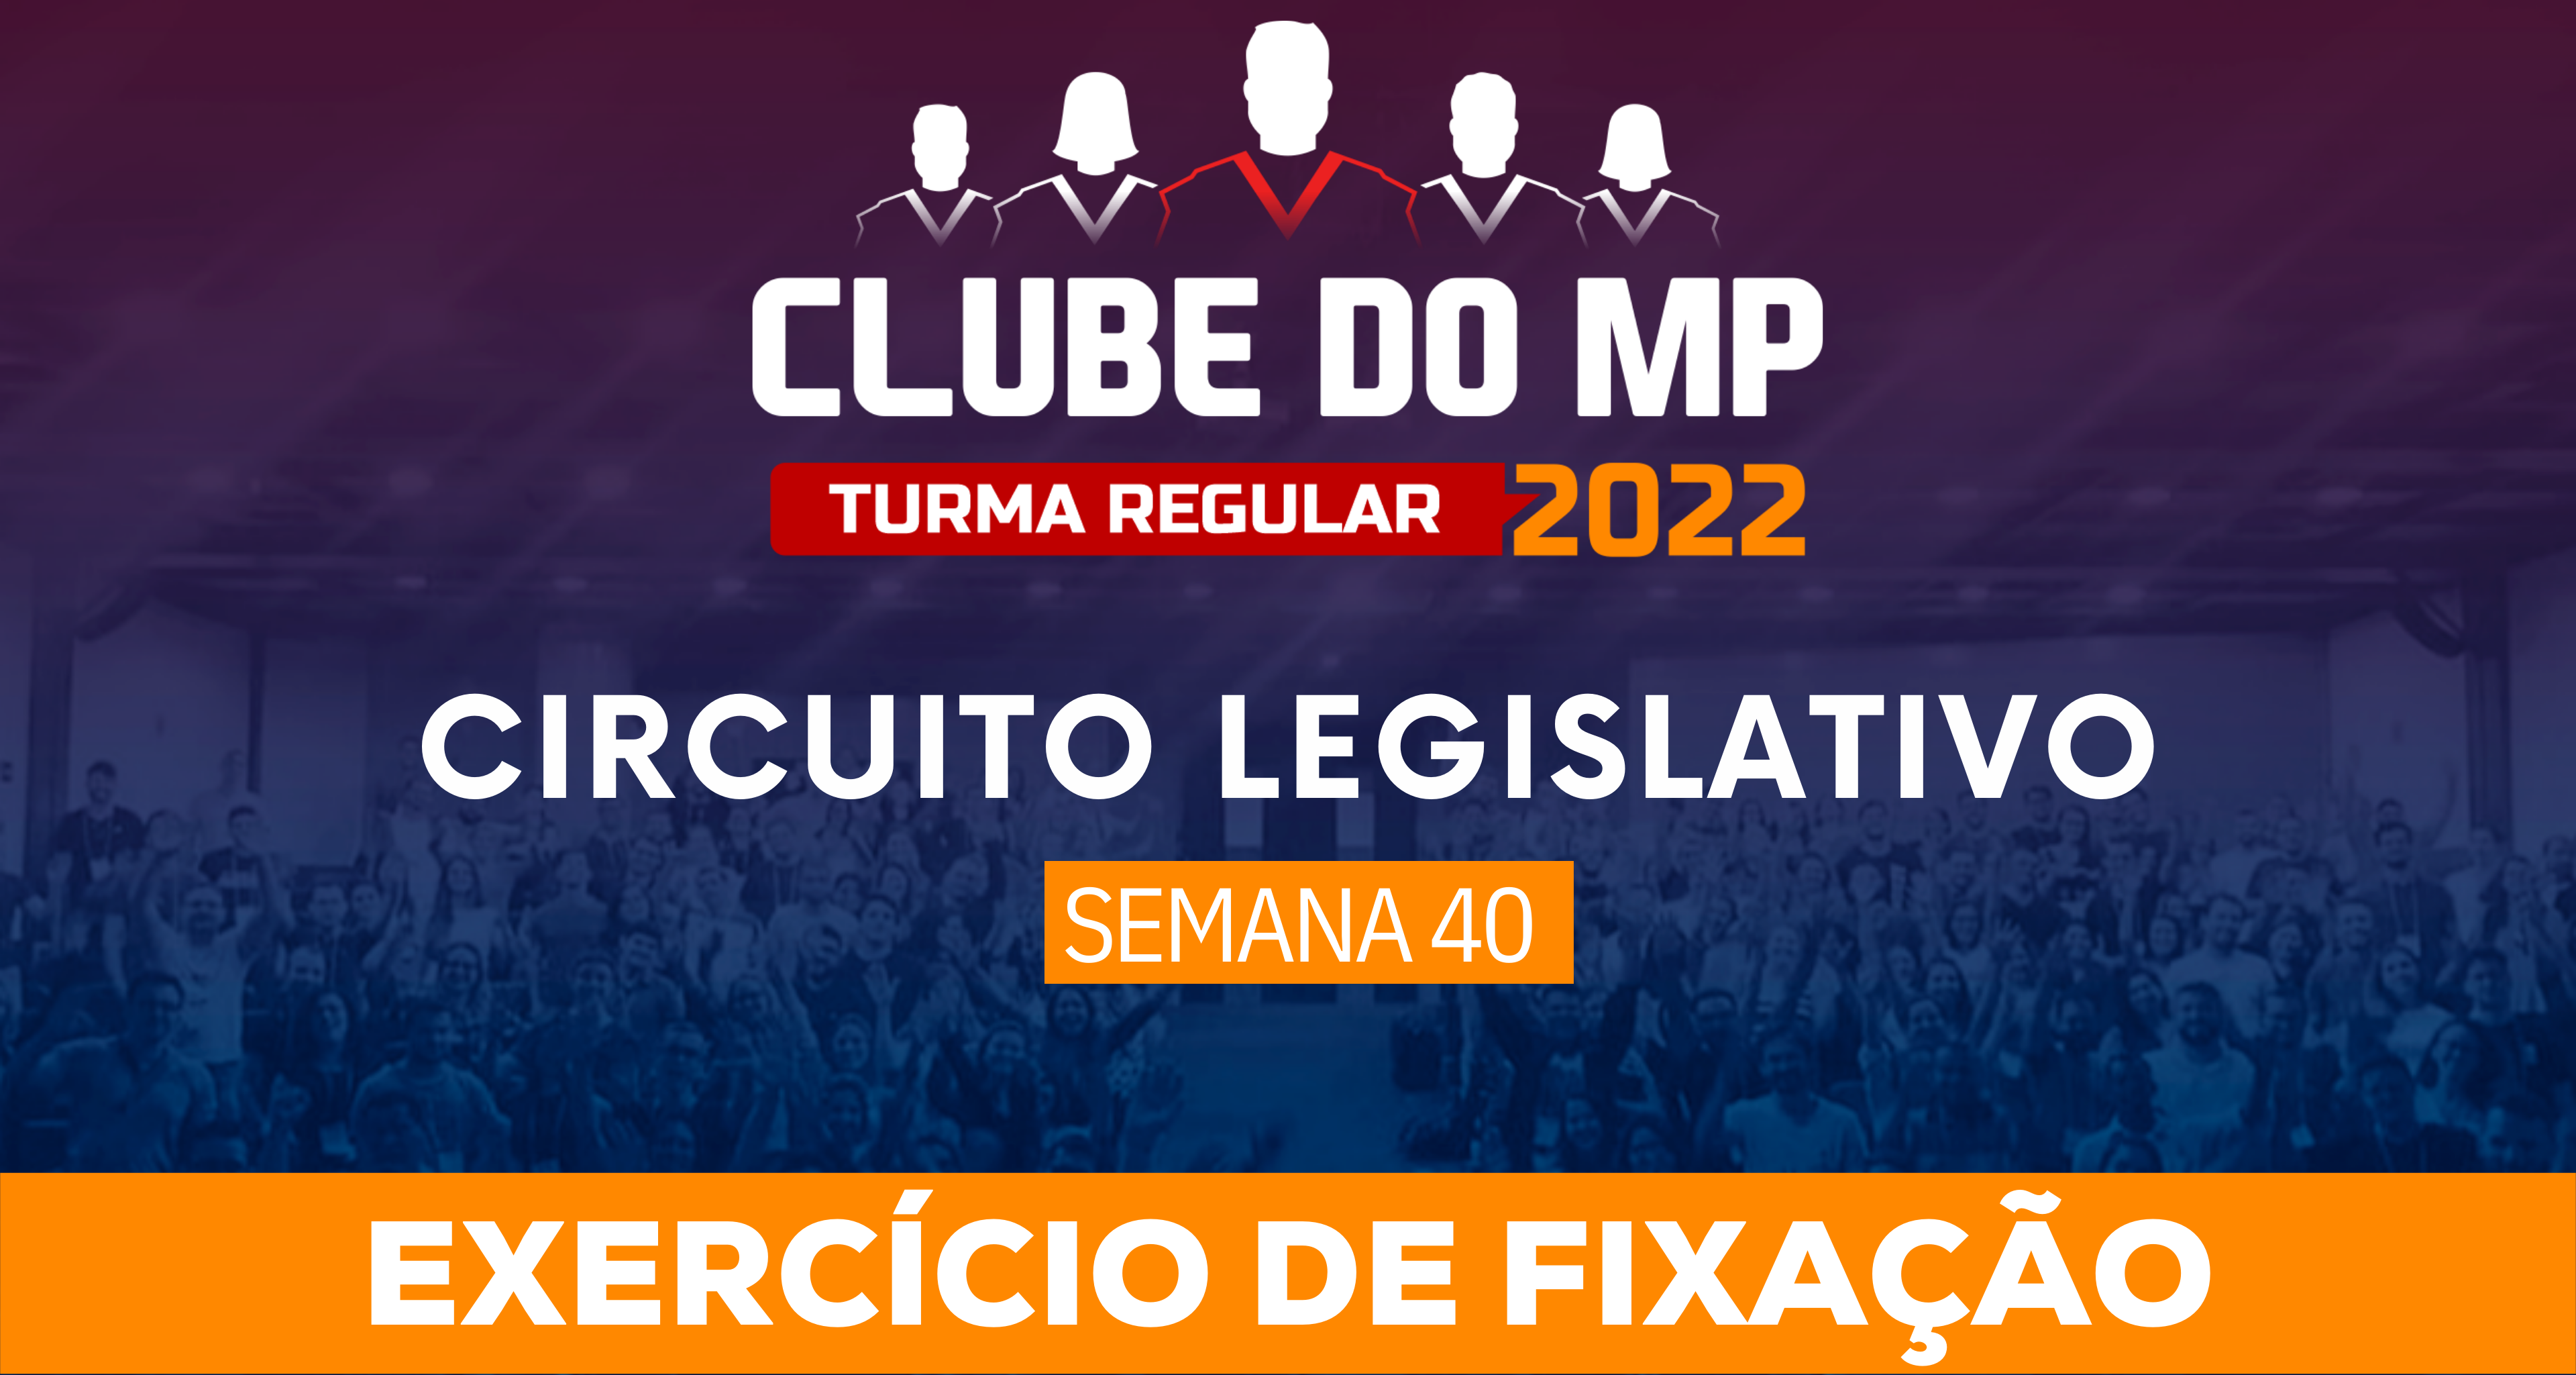 Circuito Legislativo 2022.1 (Clube do MP - Semana 40)